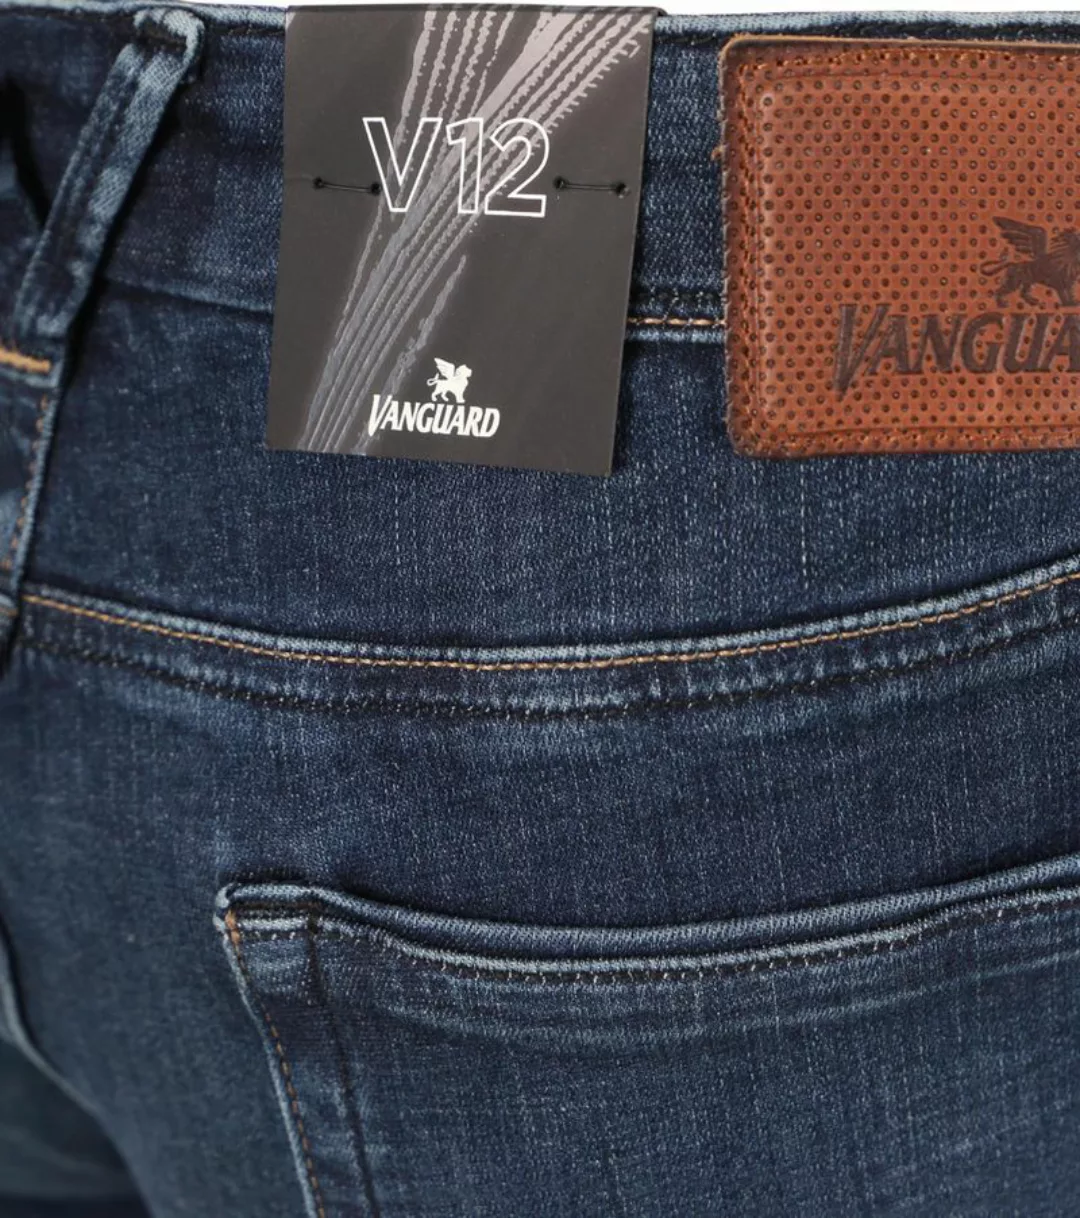 Vanguard Jeans V12 Rider Blau DBG - Größe W 36 - L 30 günstig online kaufen